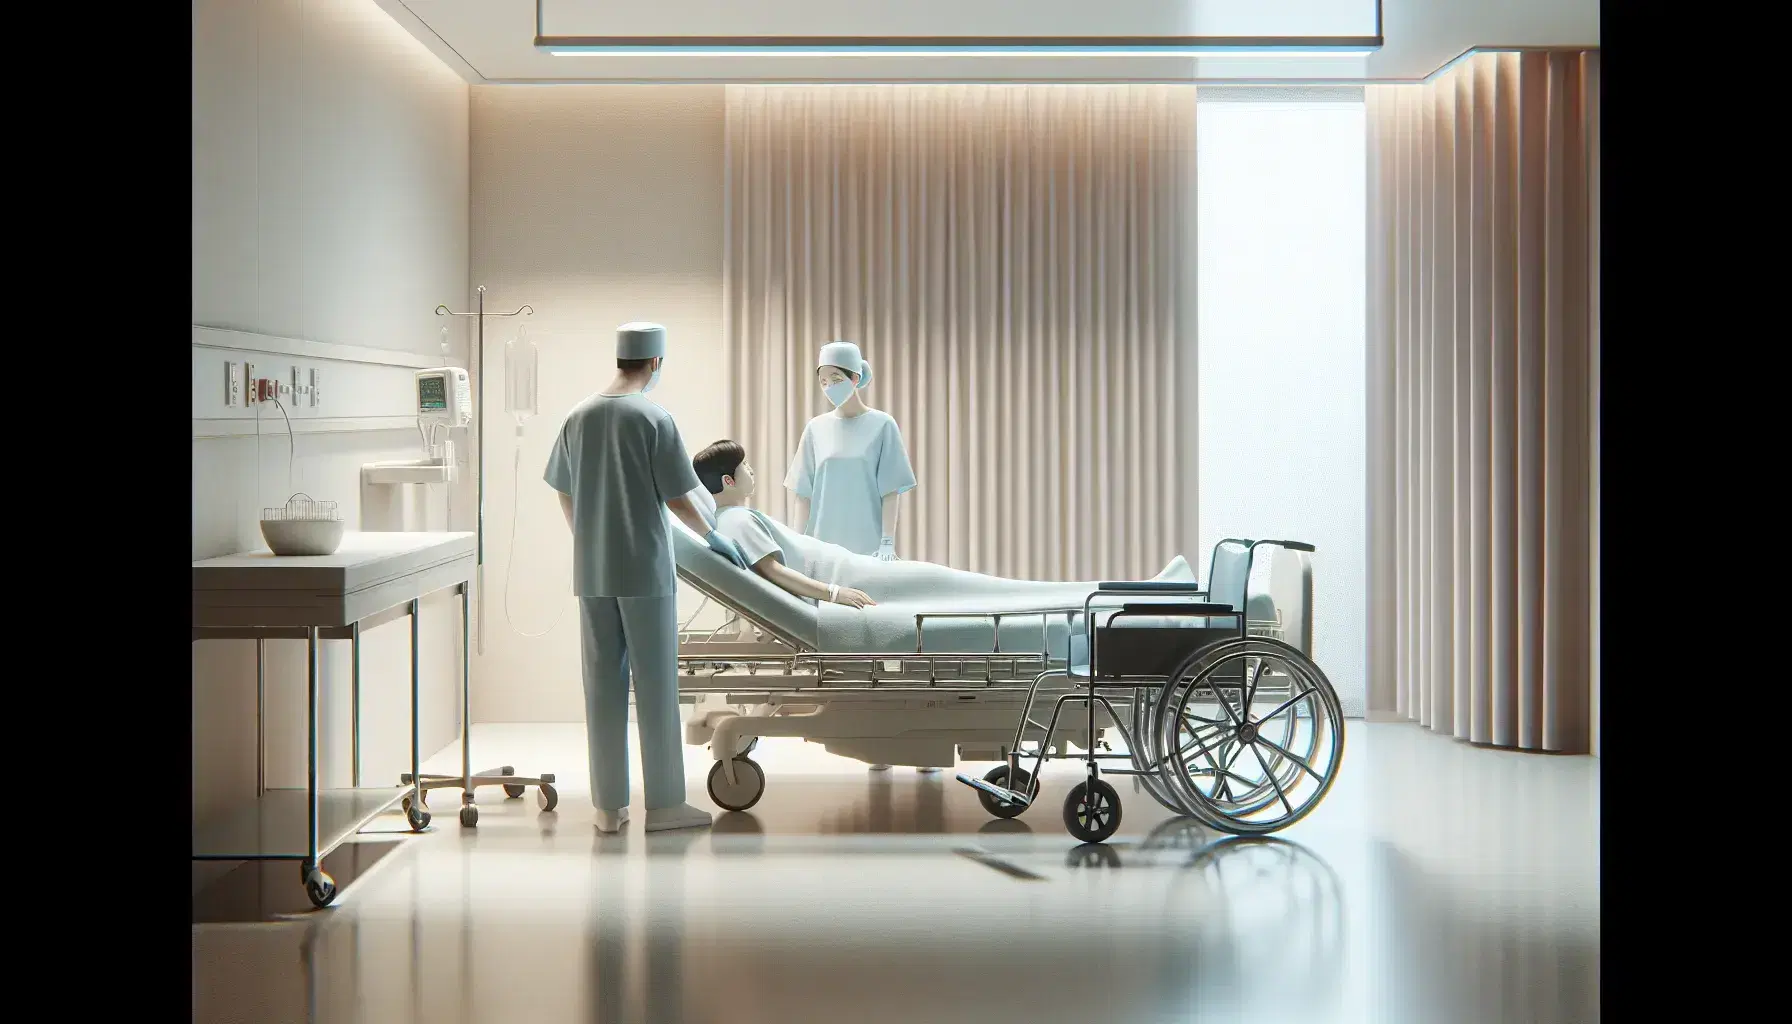 Profesionales de la salud en uniforme azul claro asisten a paciente en cama de hospital ajustable, con silla de ruedas al lado y cortina de privacidad parcialmente cerrada en ambiente hospitalario tranquilo.